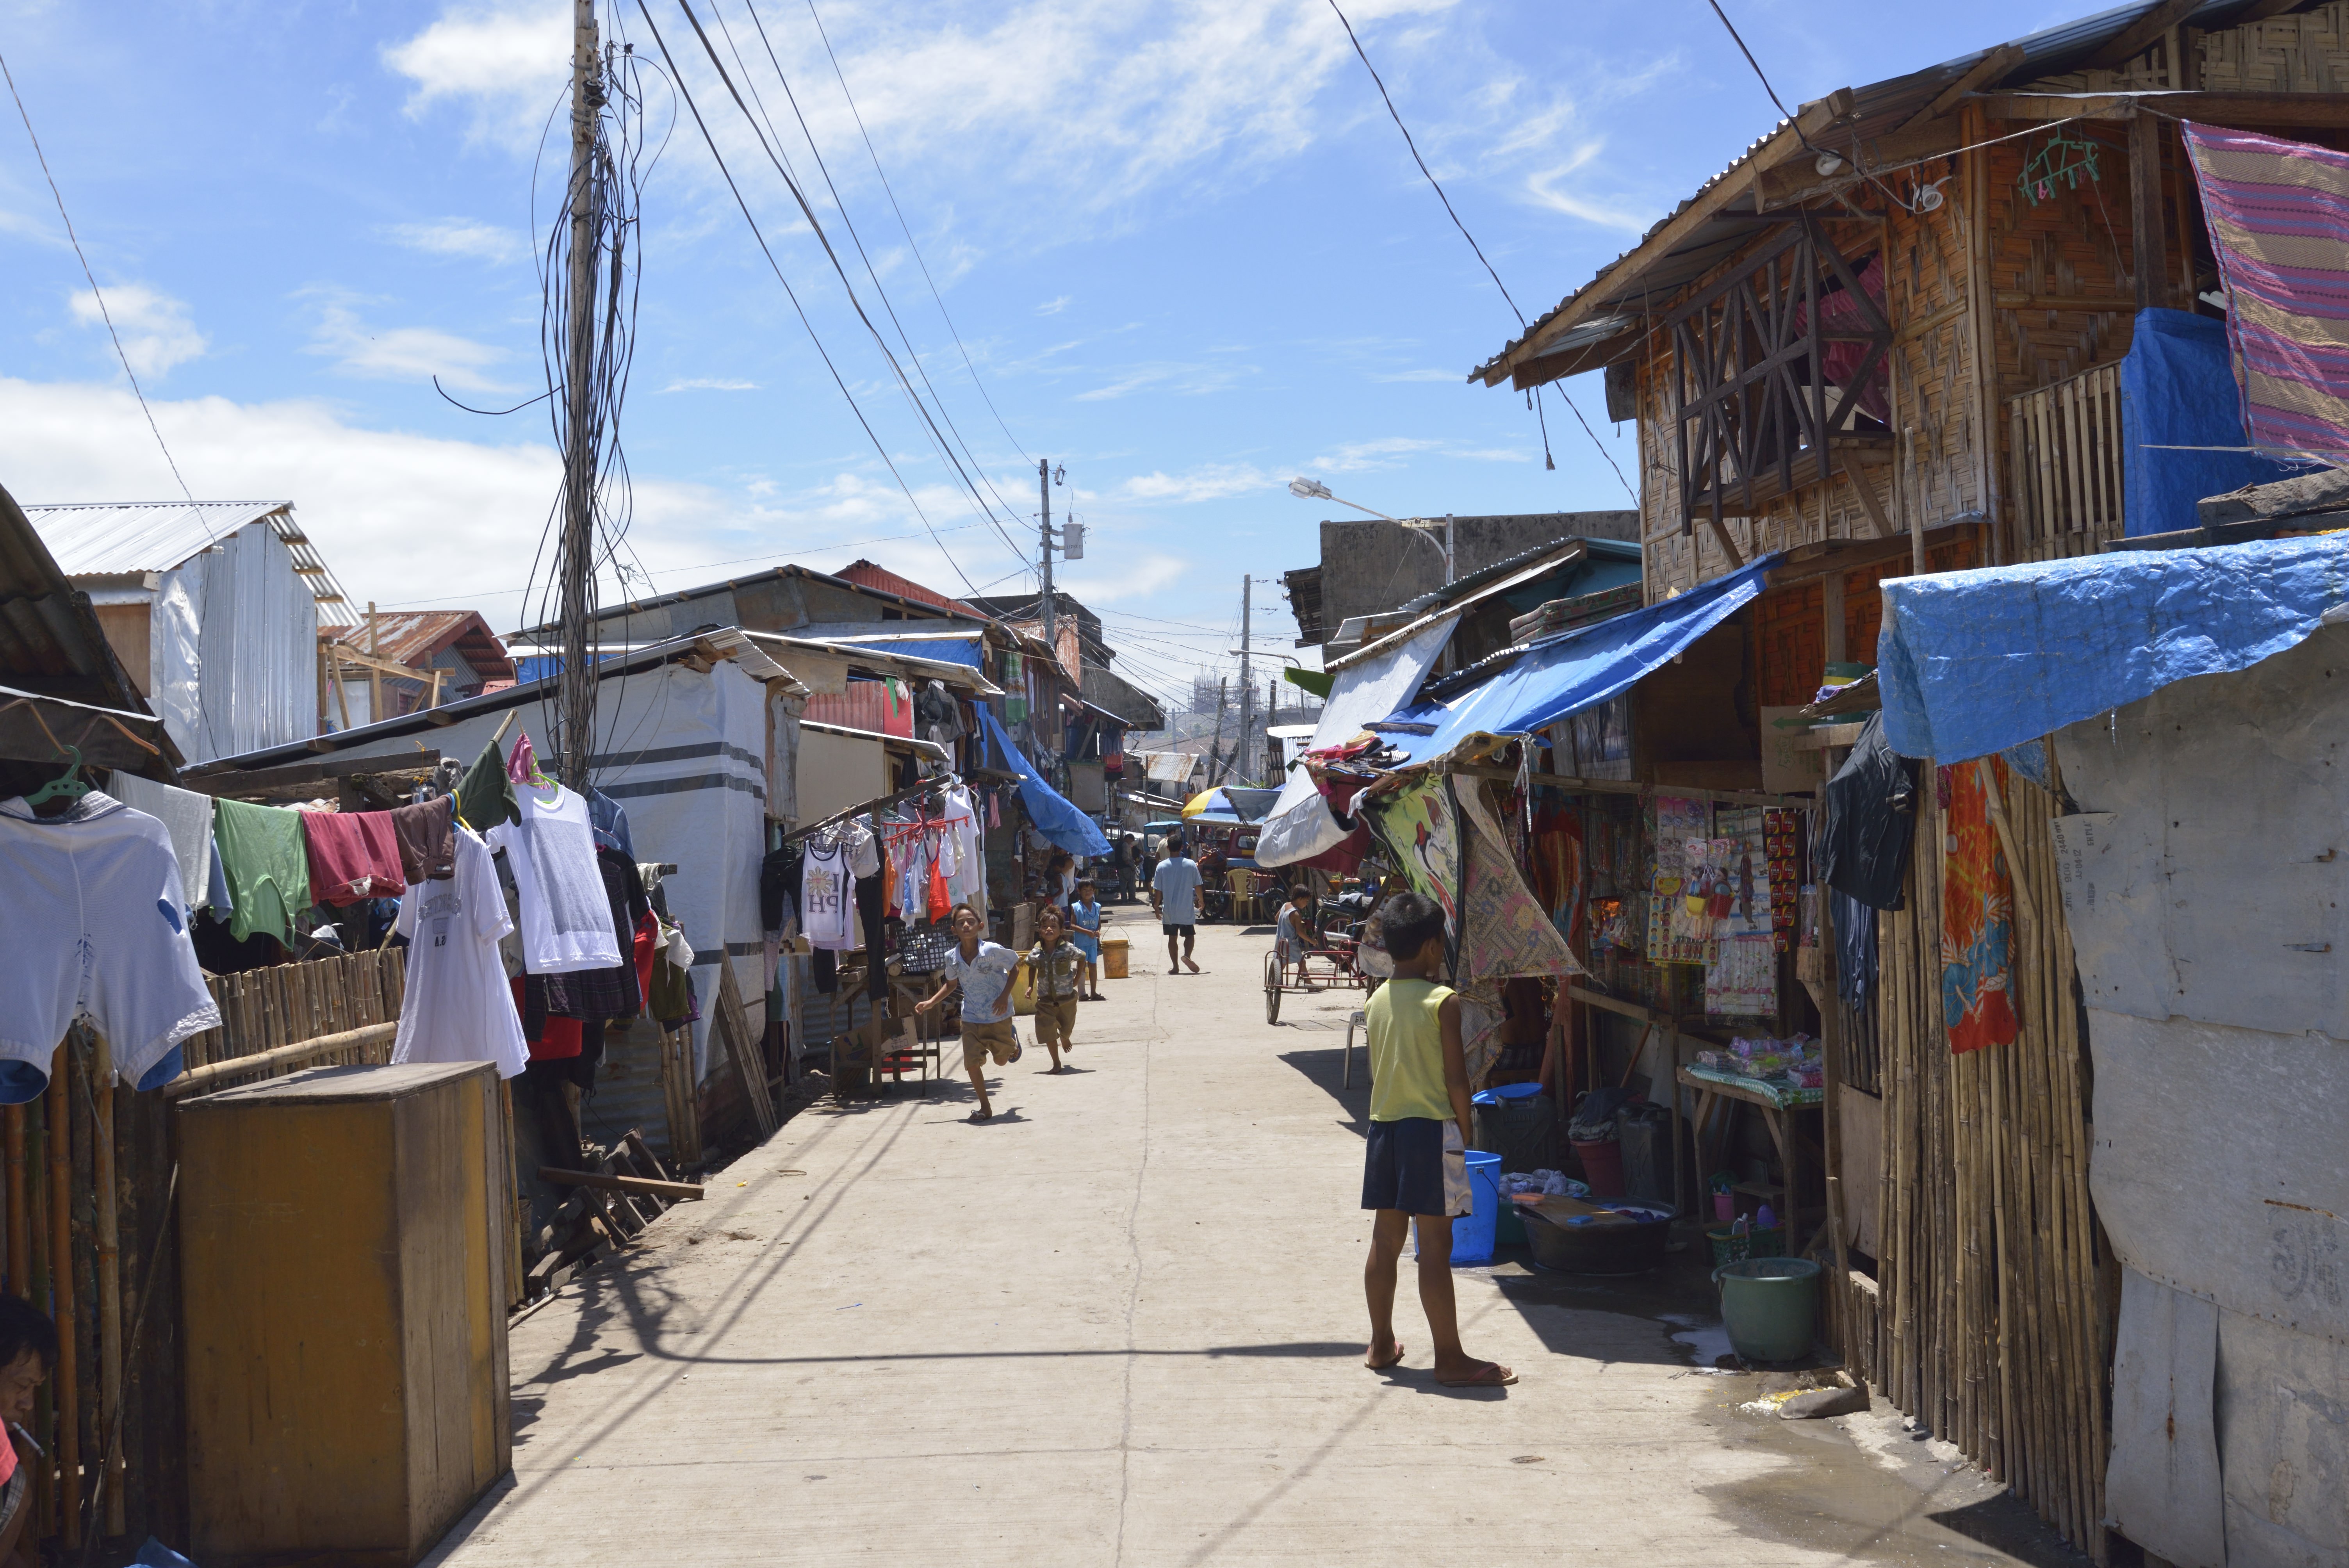 Barangay Bagong Buhay, Ormoc province, Philippines after Typhoon Haiyan.